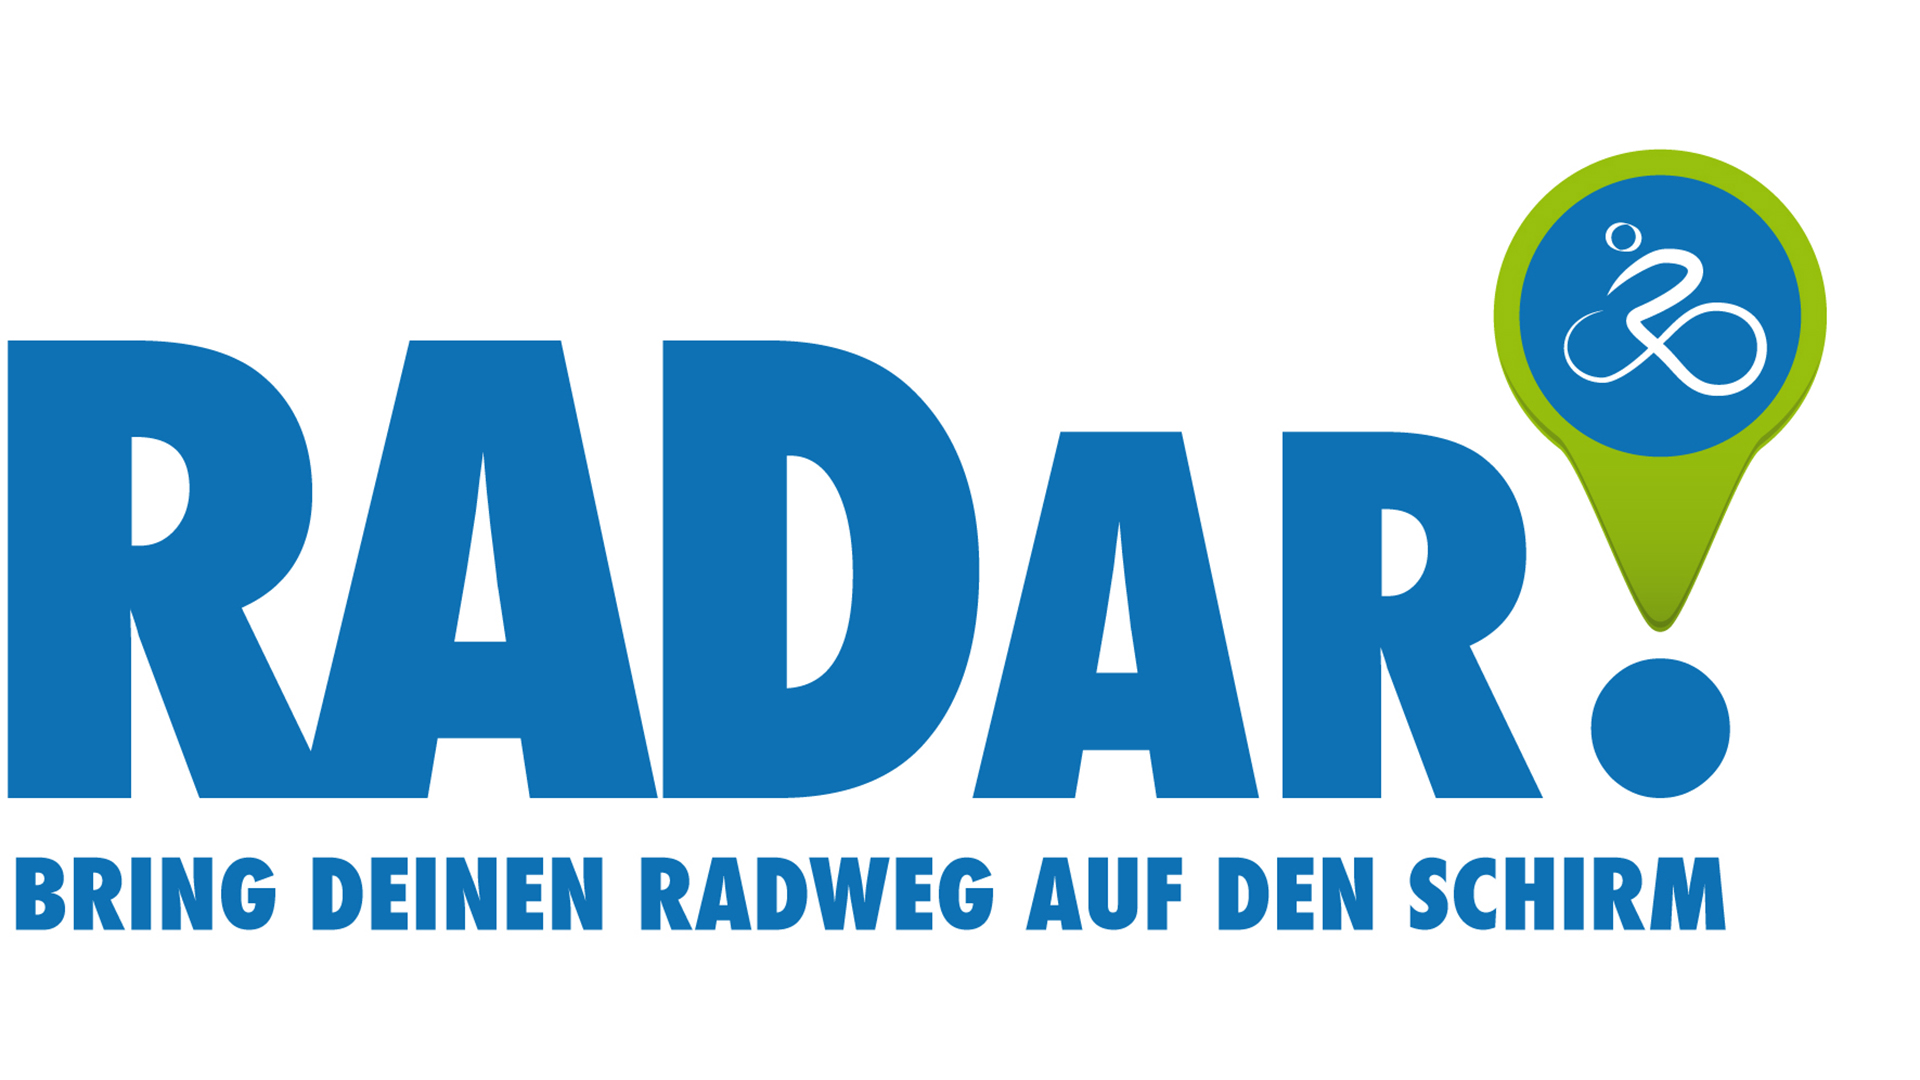 Die Plattform RADar! soll den Radverkehr in Stadt und Landkreis Wolfenbüttel verbessern.